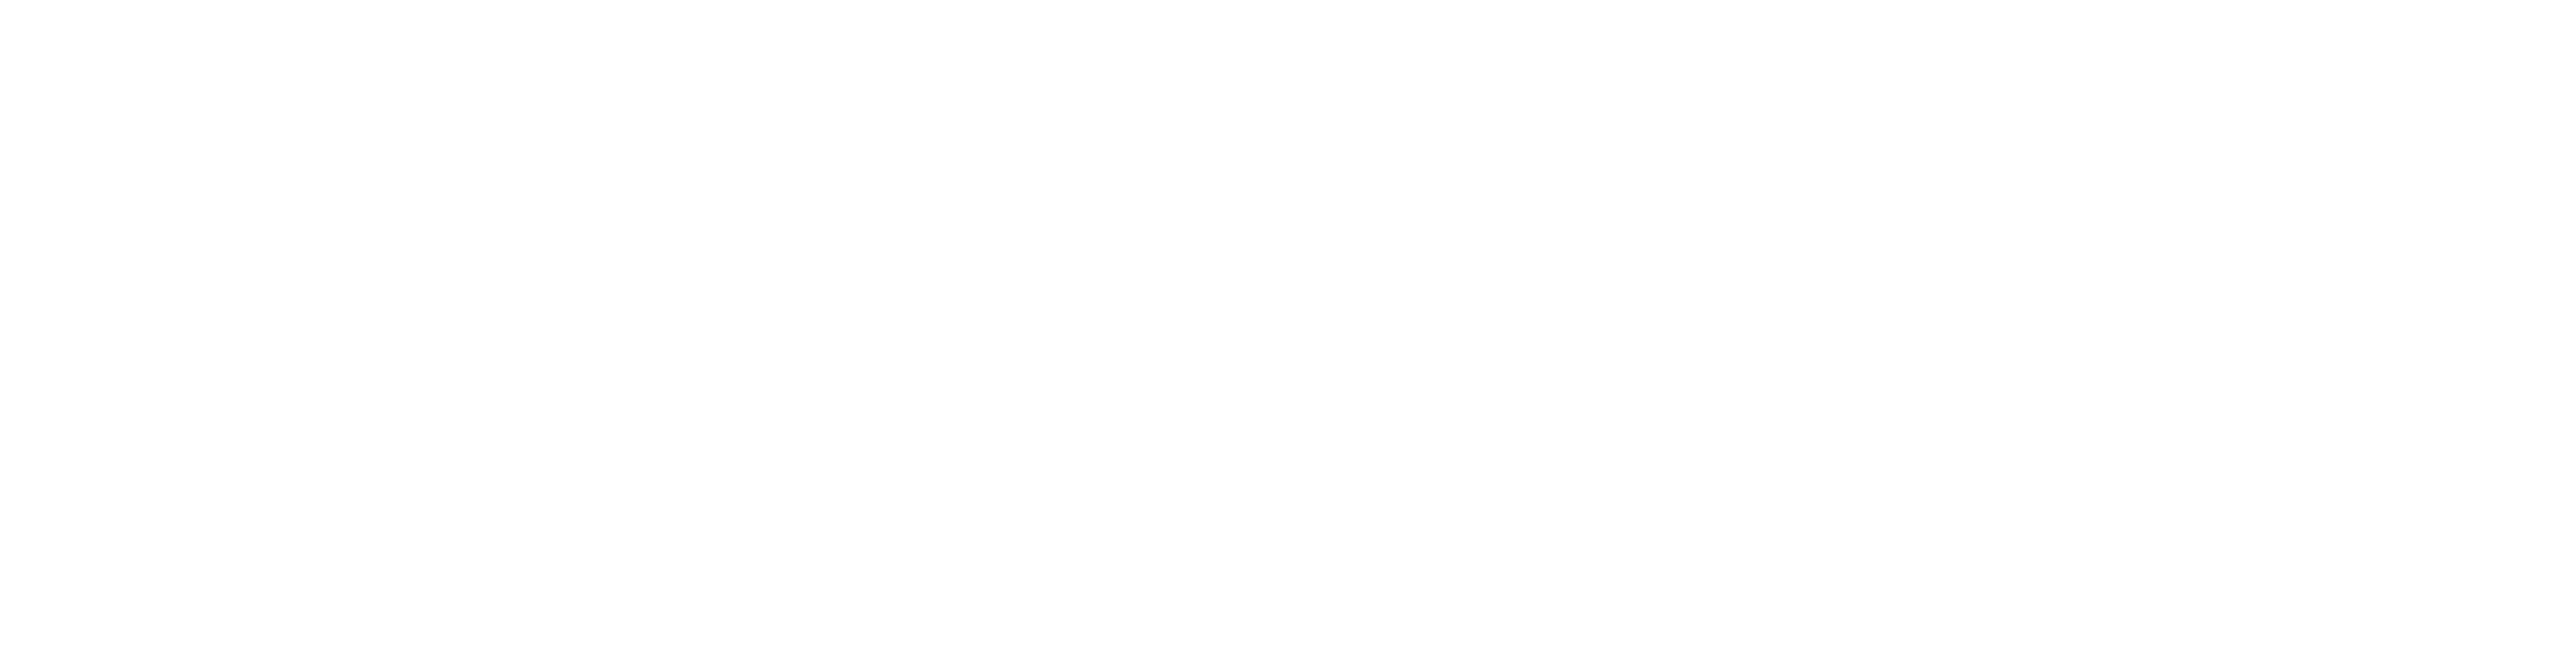 Kontorfællesskab Frederiksberg logo hvid